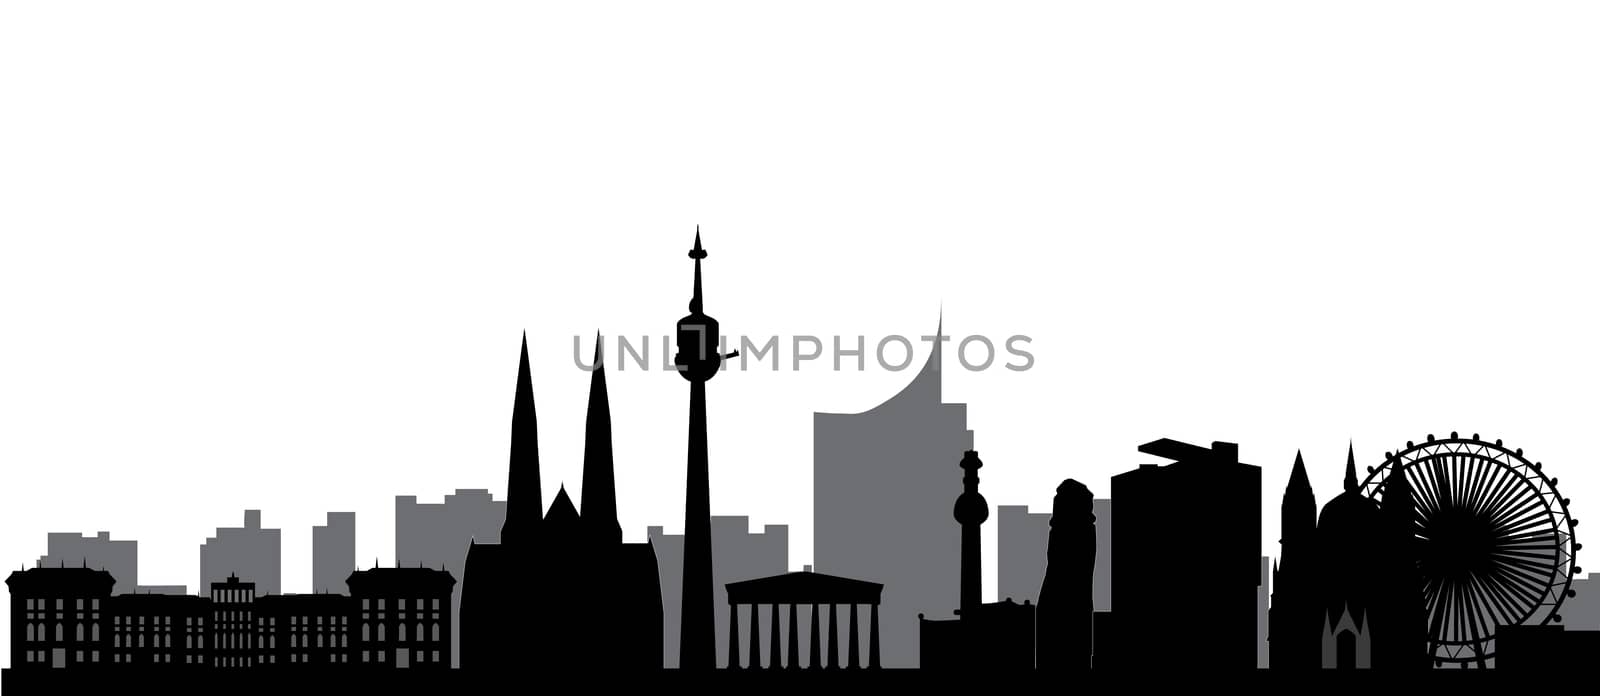 vienna skyline by compuinfoto